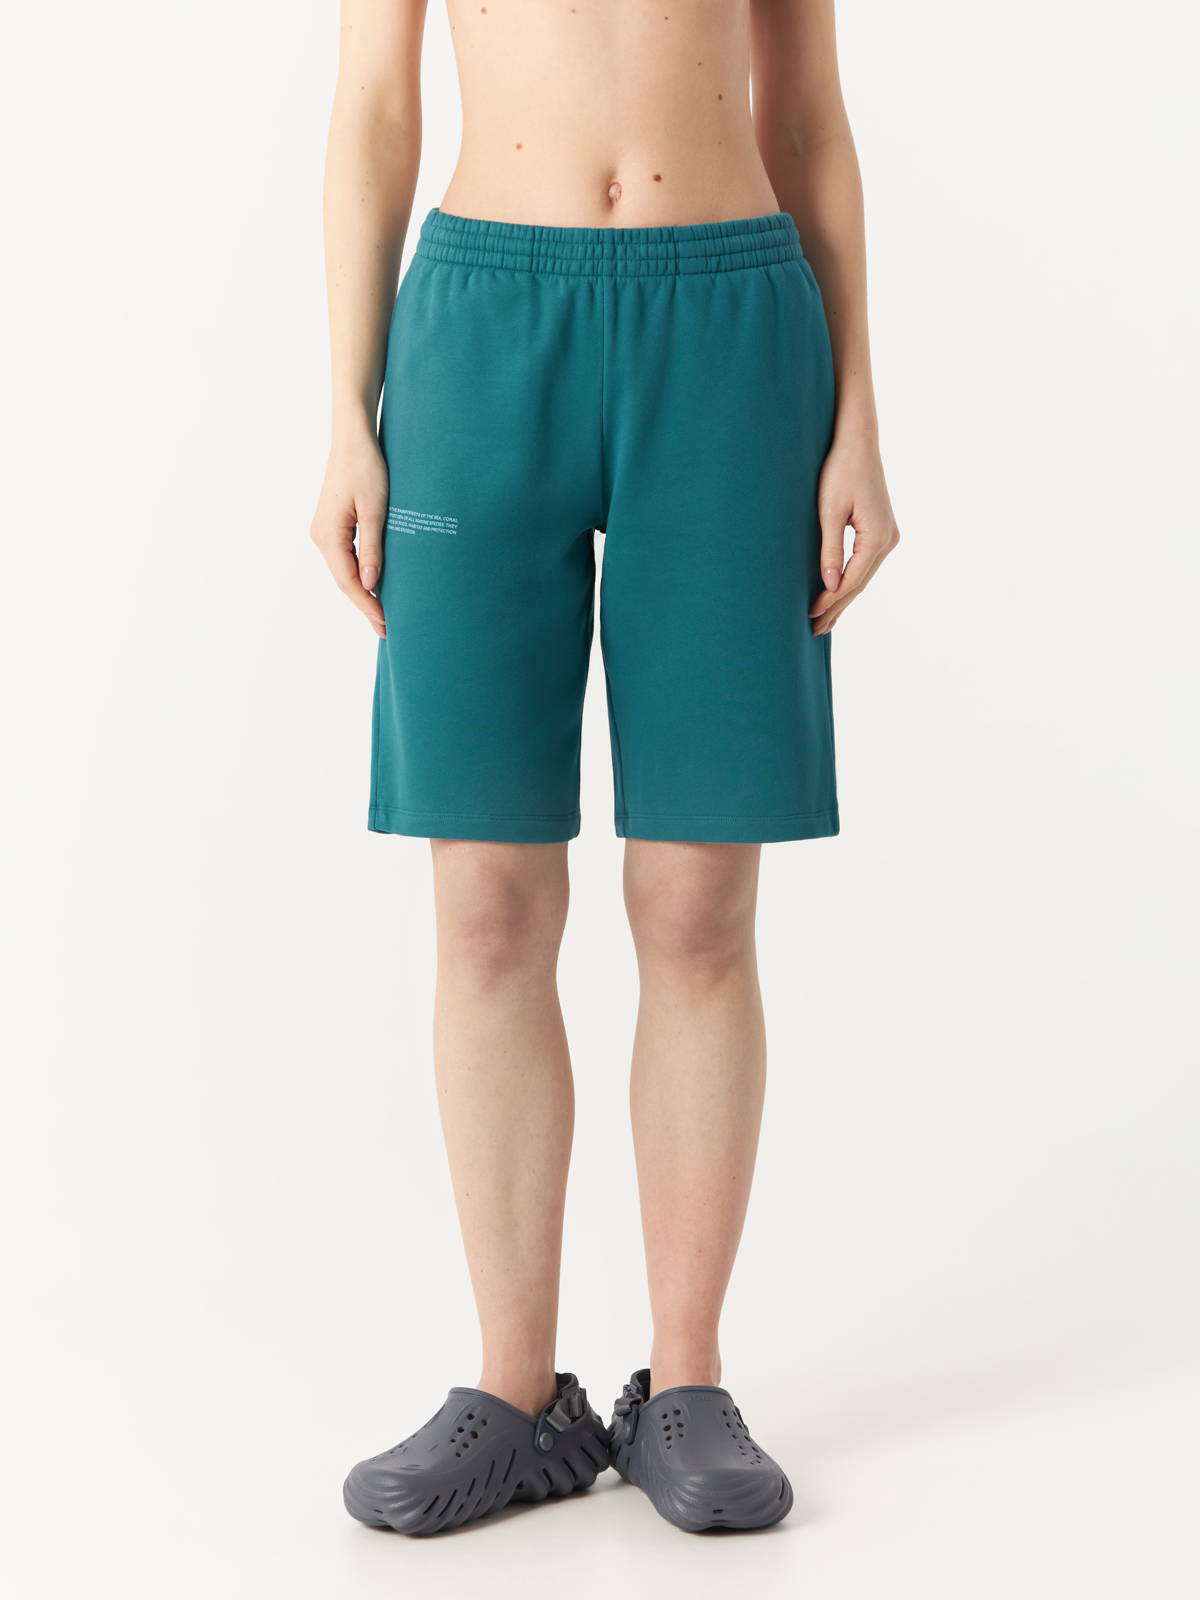 Повседневные шорты женские PANGAIA Coral Reef Long Shorts зеленые XXS